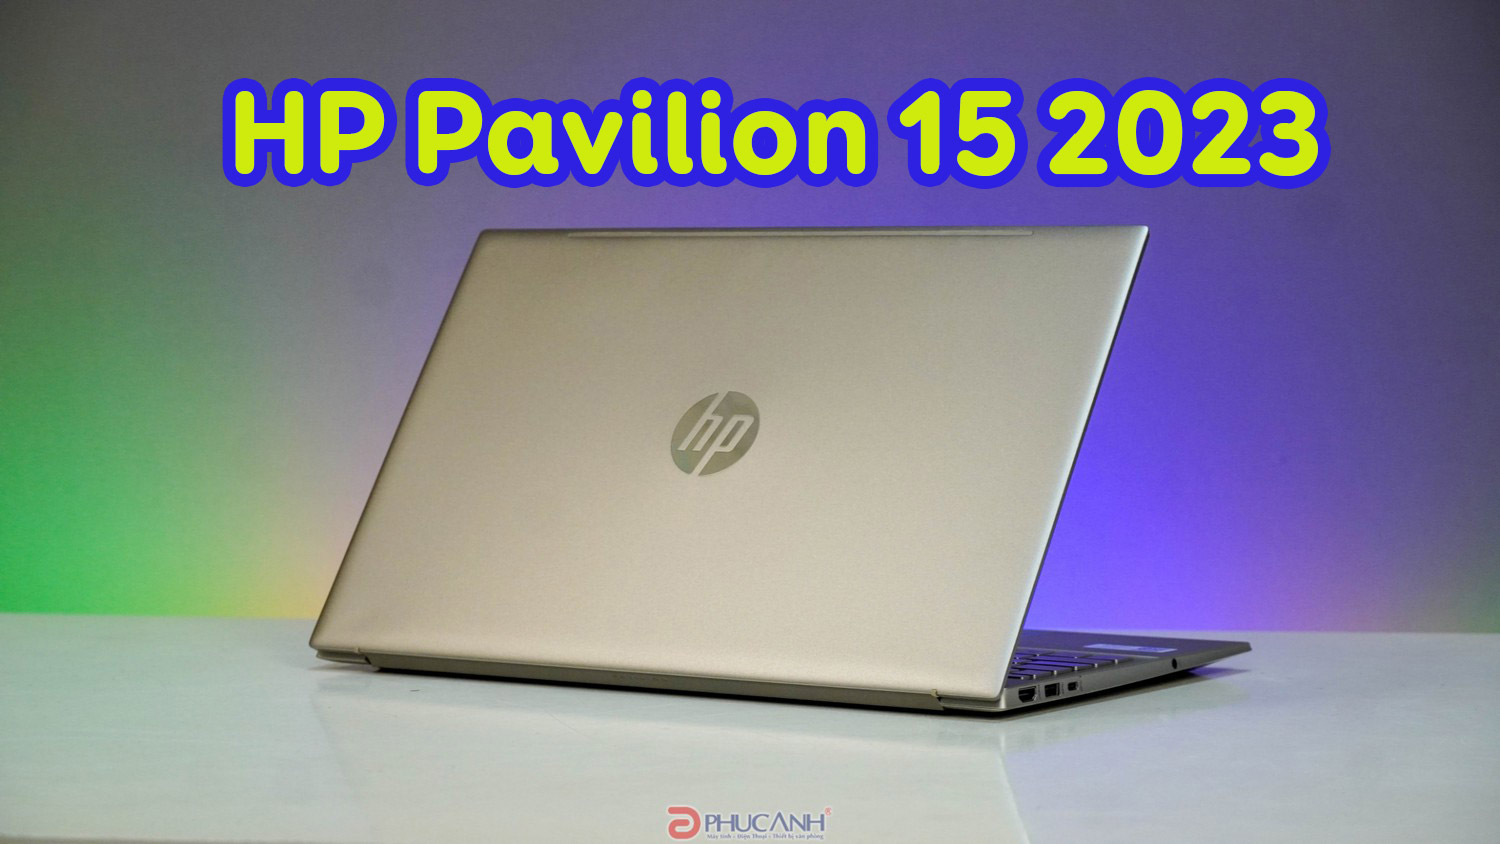 Đánh giá HP Pavilion 15 2023 - Laptop mỏng nhẹ với CPU Intel thế hệ 13 mạnh mẽ